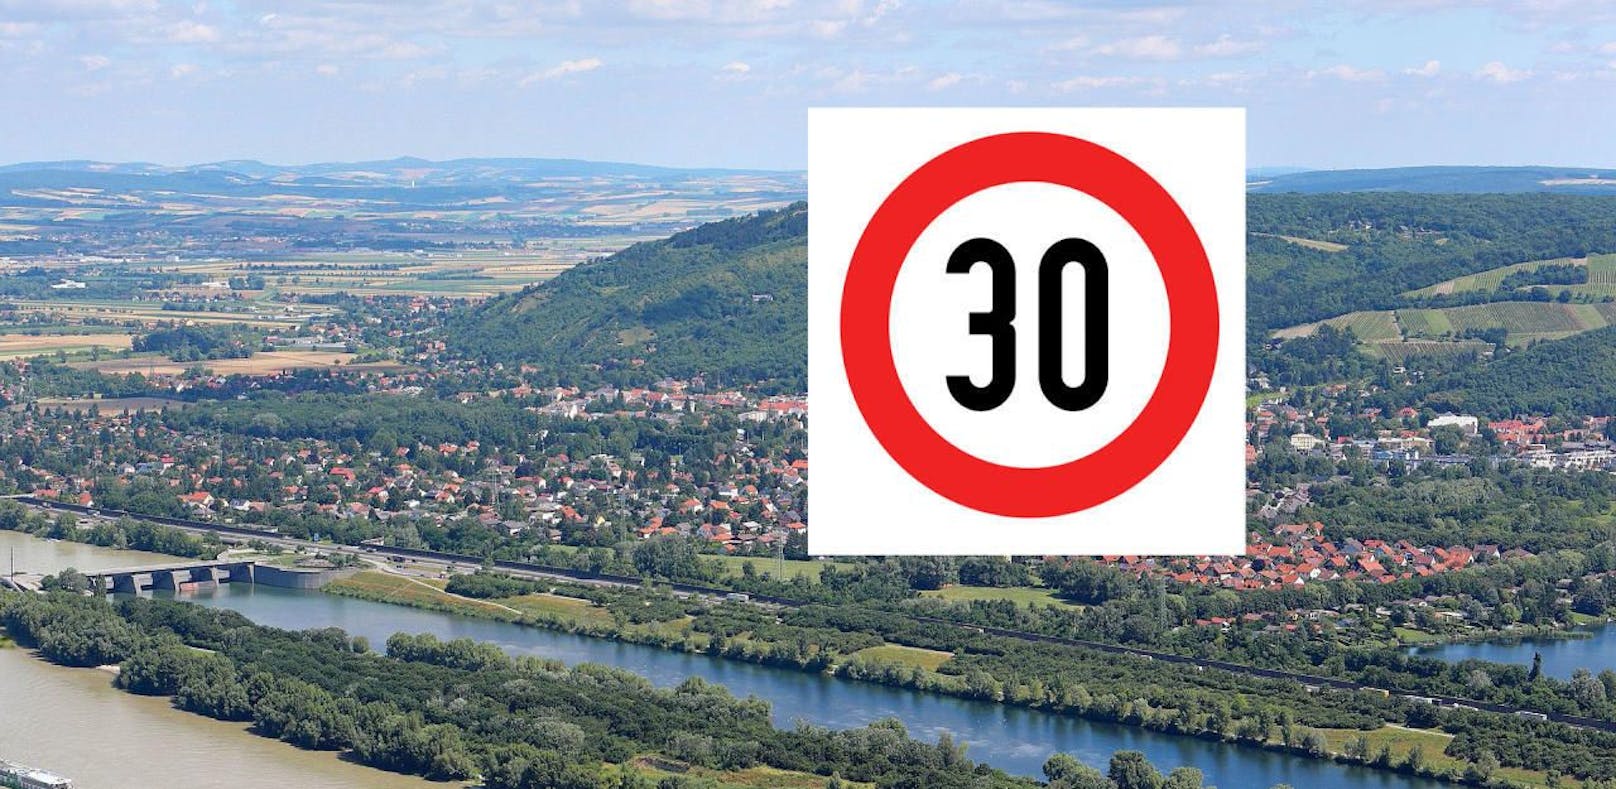 Die 30 km/h-Beschränkung gilt ab sofort flächendeckend in Langenzersdorf.